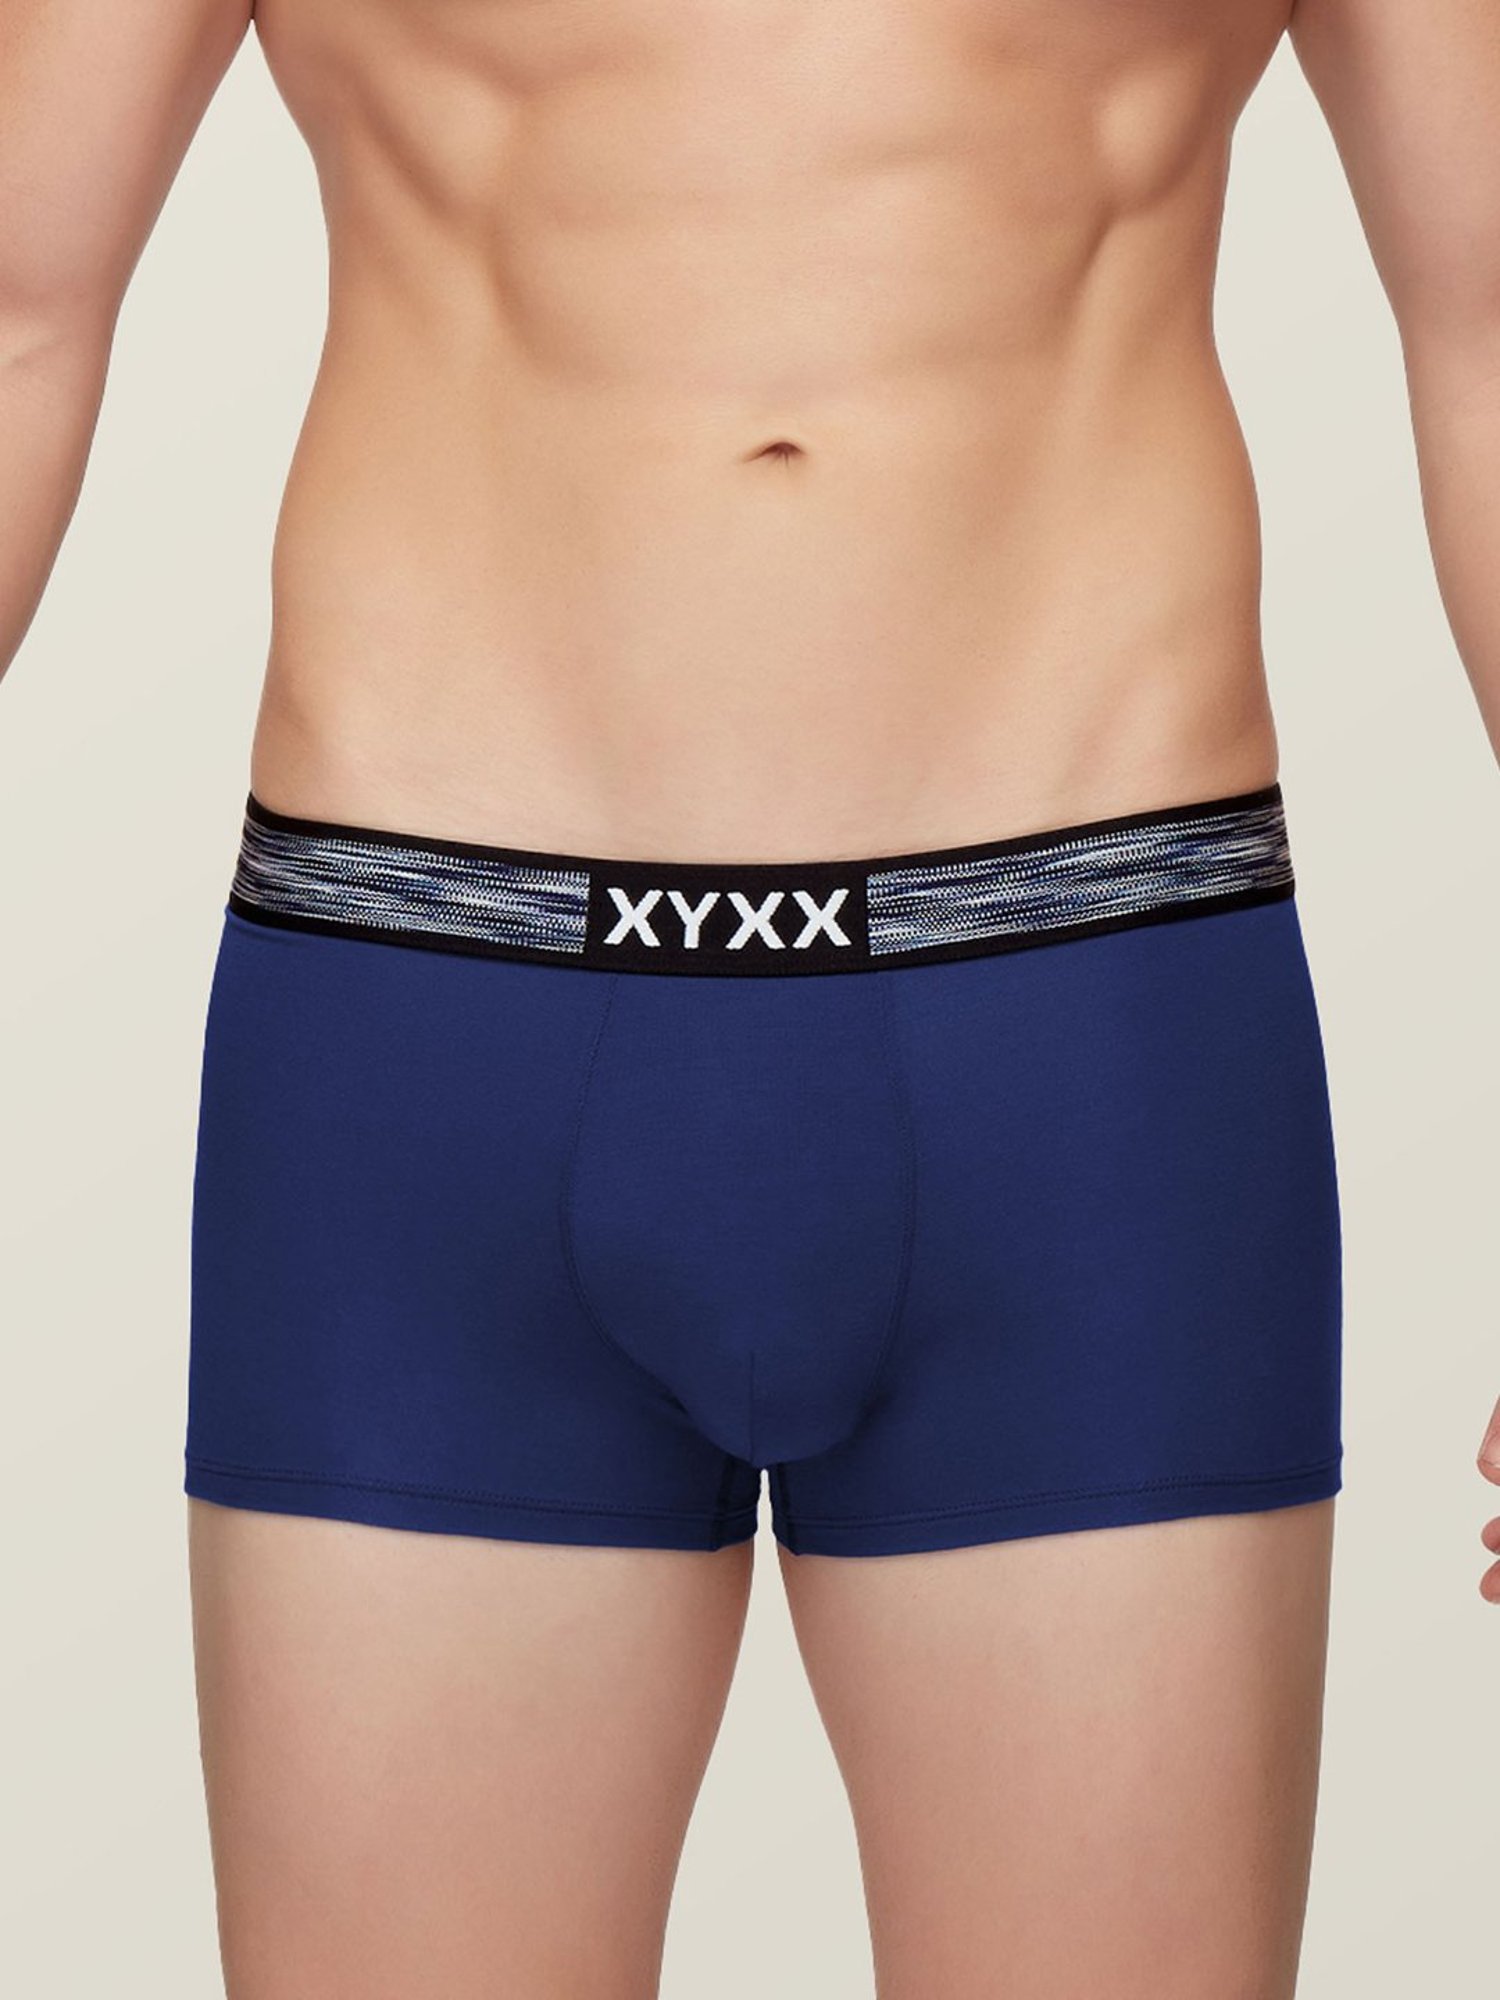 Buy XYXX Indigo Trunks for Men's Online @ Tata CLiQ